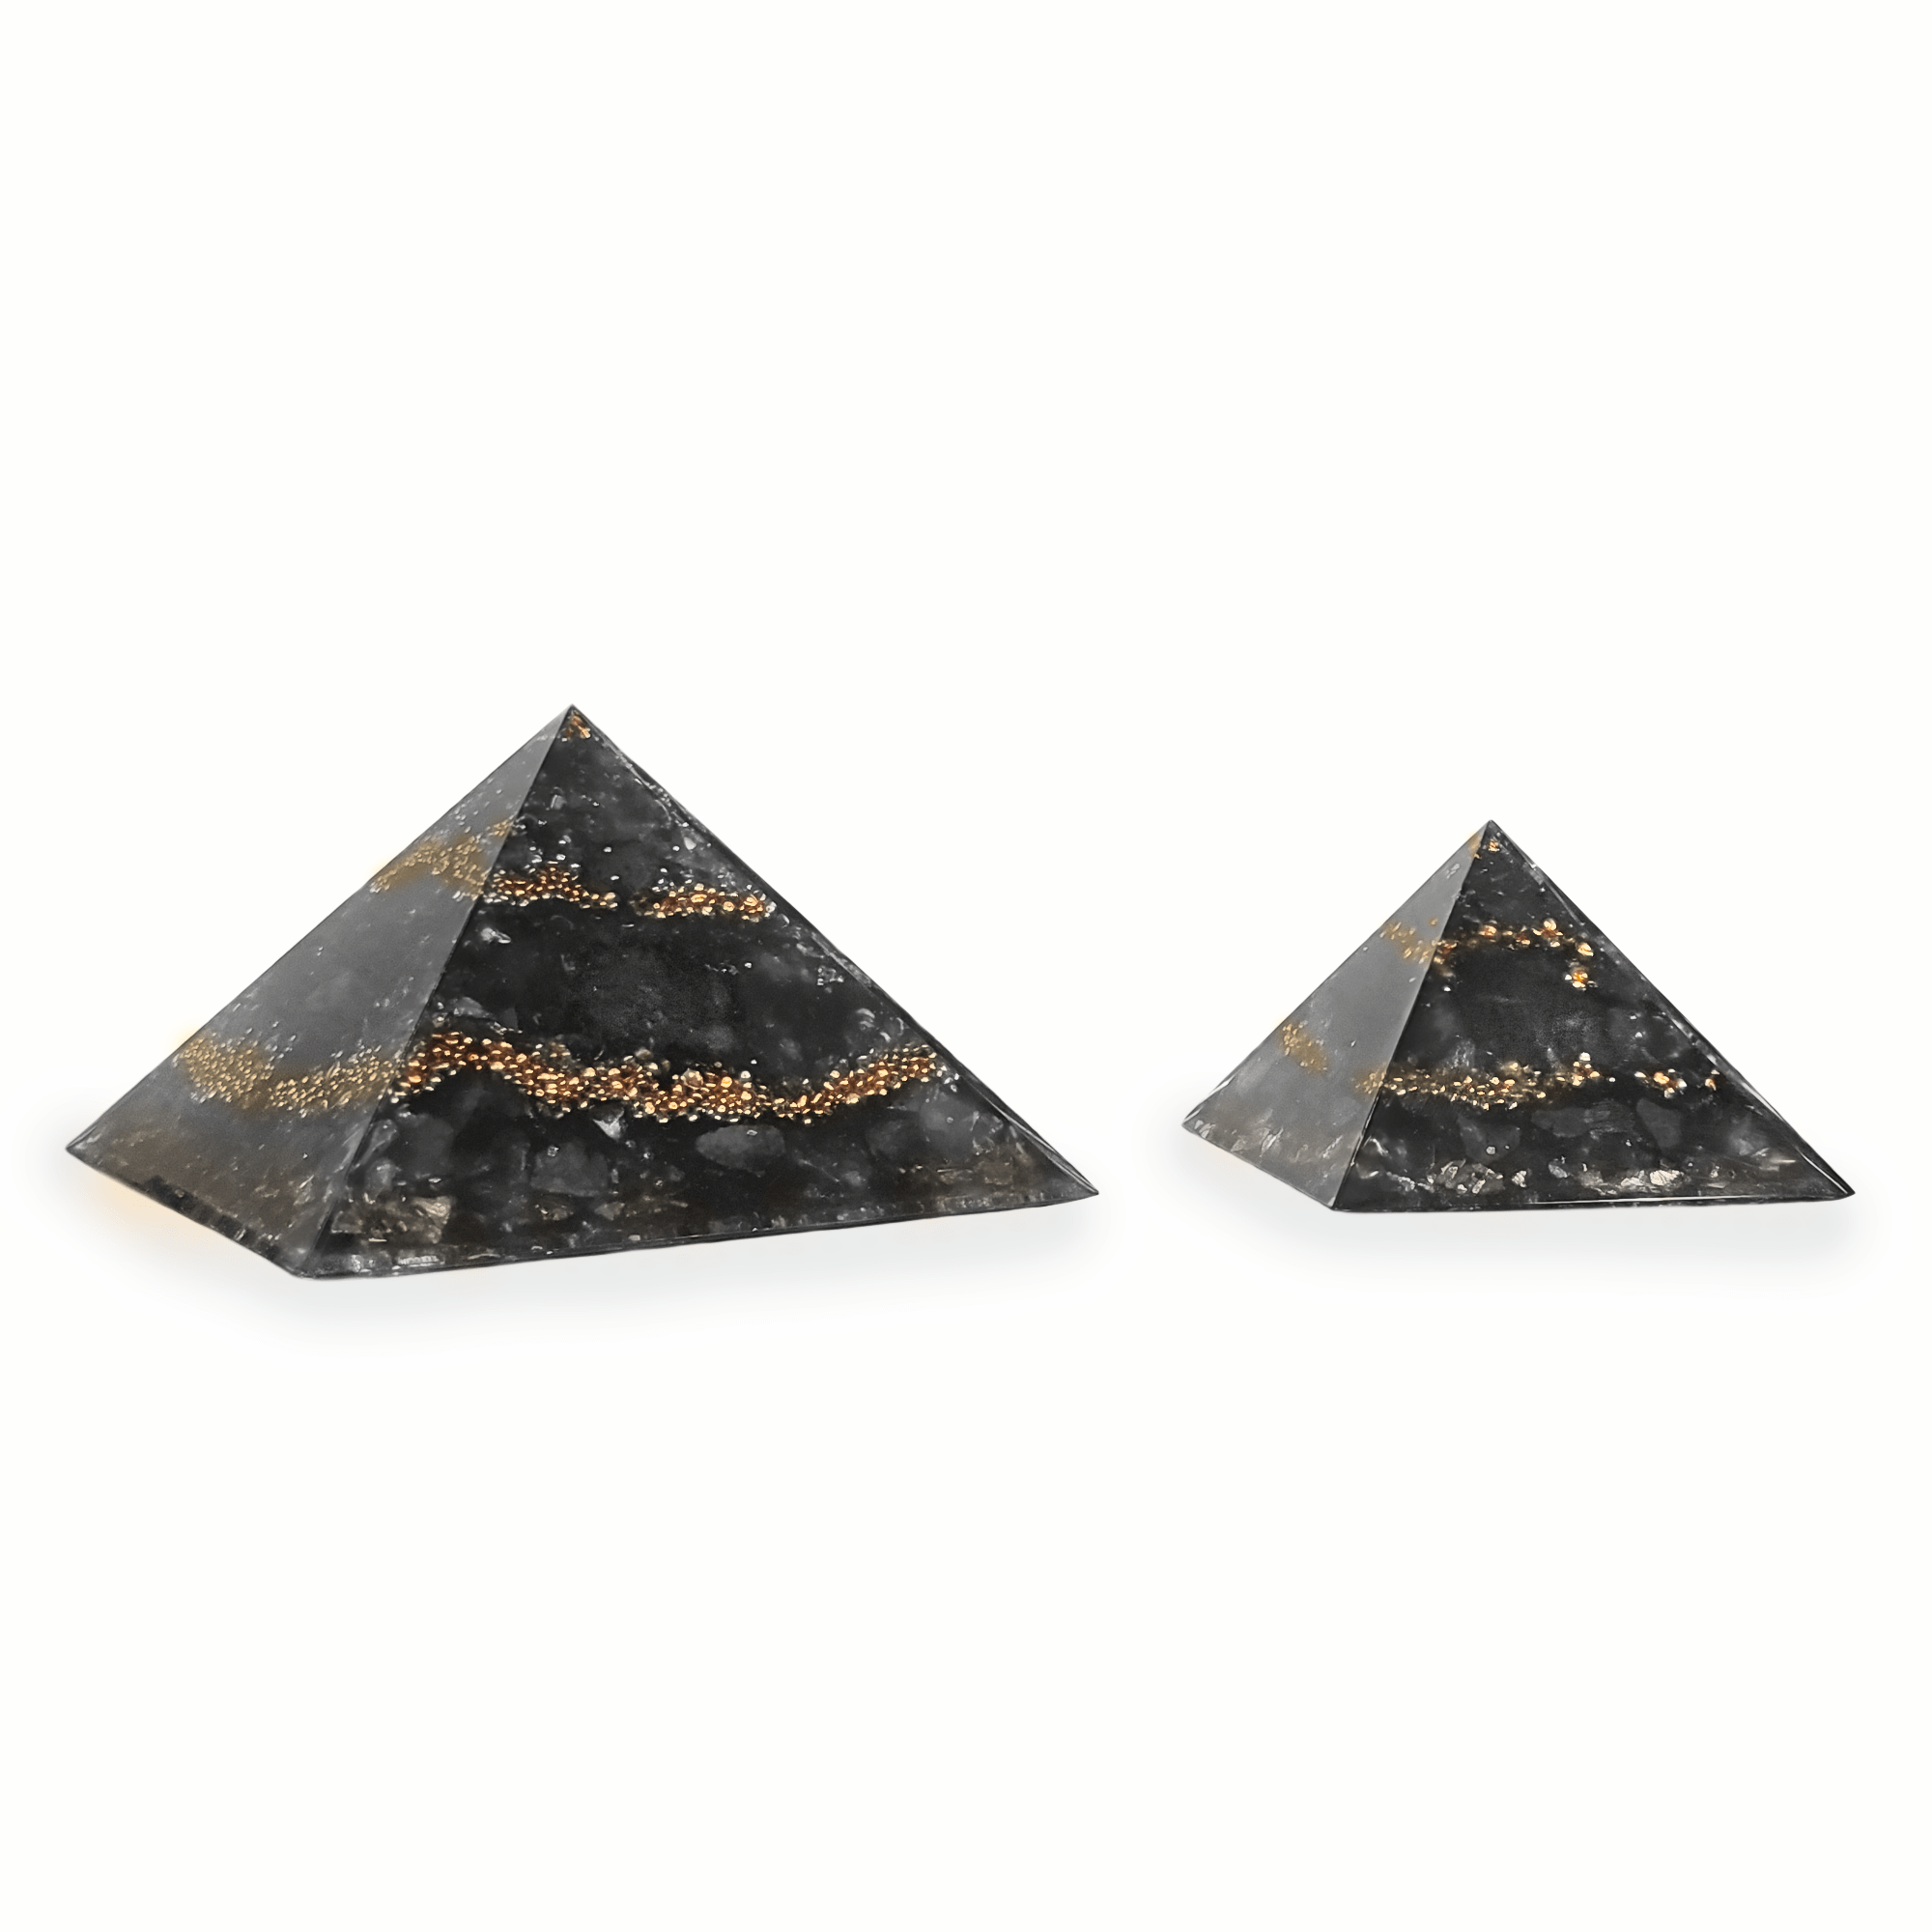 Eine große XXL Orgonit Pyramide, sowie ein mittelgroßer Orgonit mit den Edelsteinen Thulit, Granat & Rubin. Die Orgoniten sind rot mit goldenen Metallelementen.